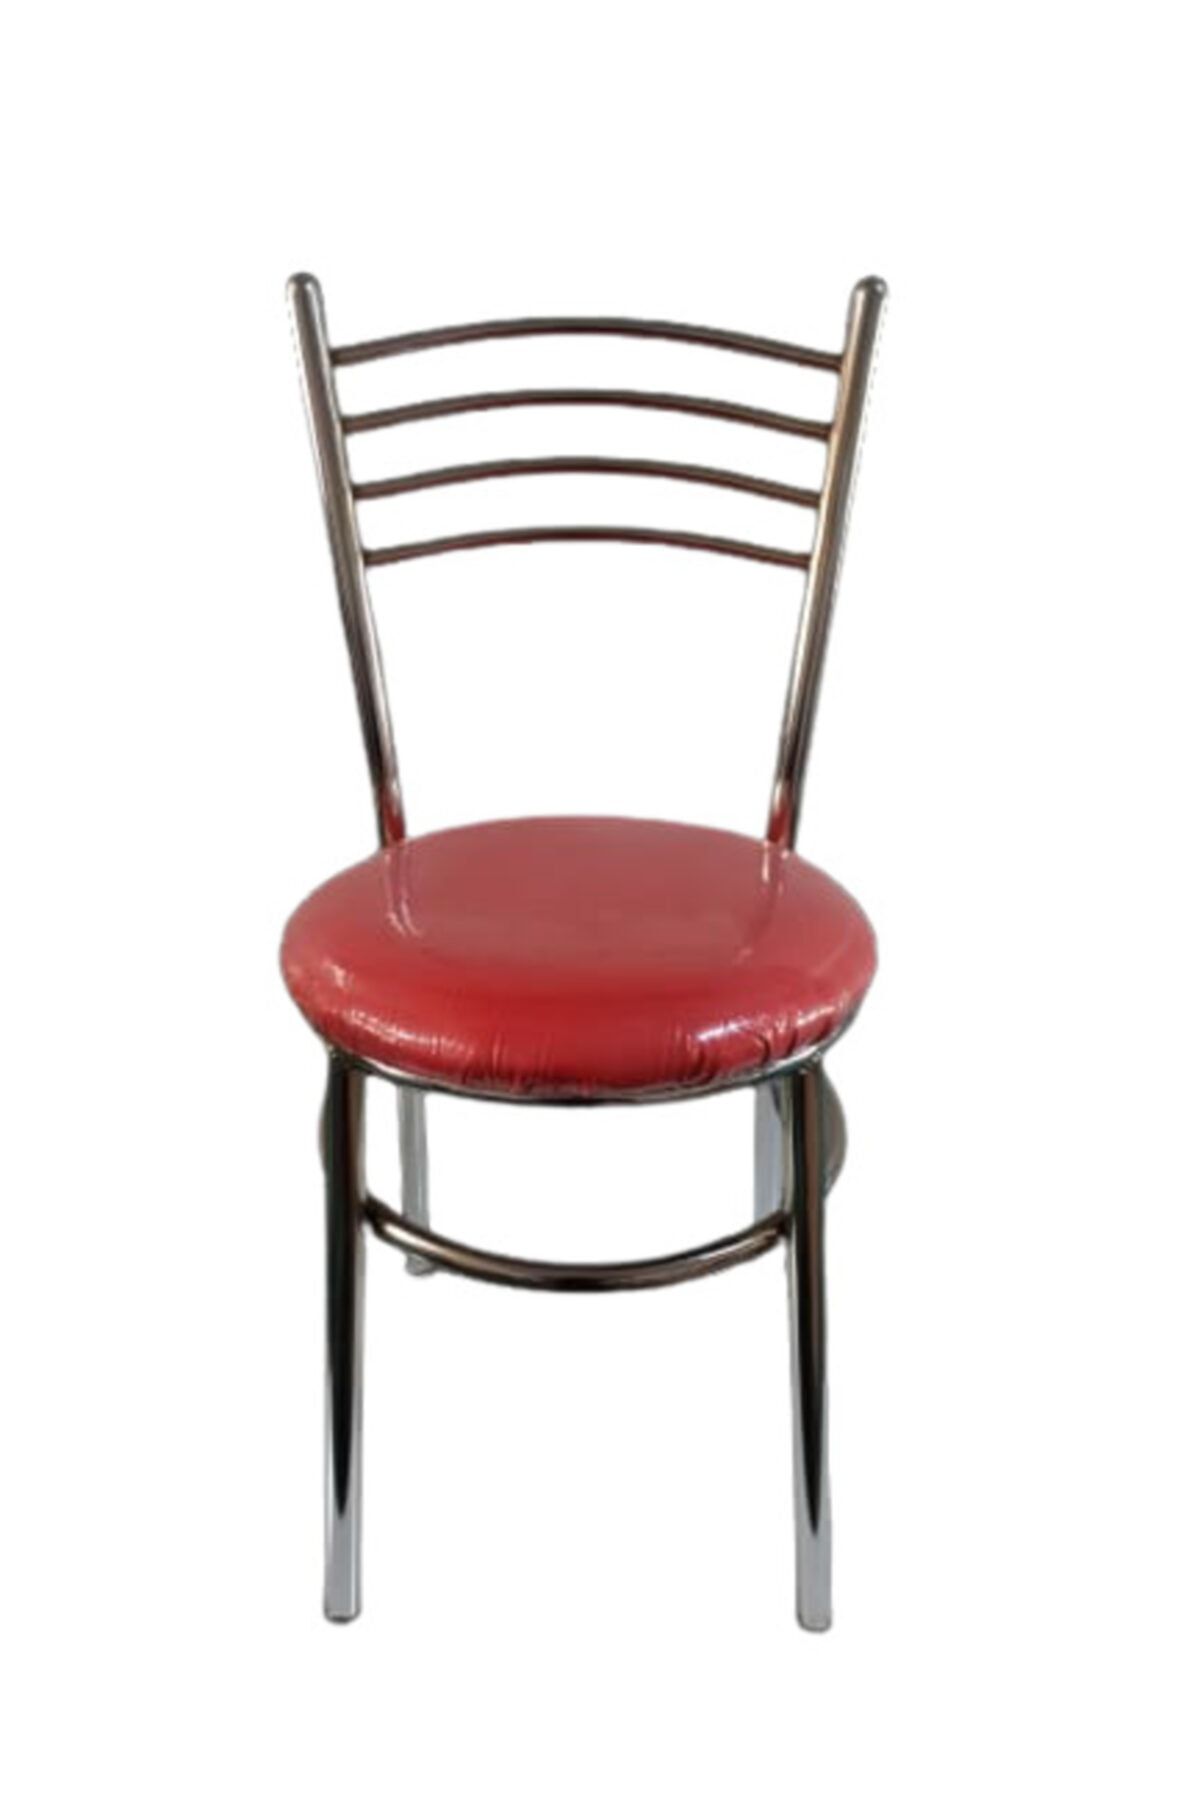 yılmaz masacılık Nikelajlı Kırmızı 3 Adet Tatlı Mutfak Bahçe Sandalyesi